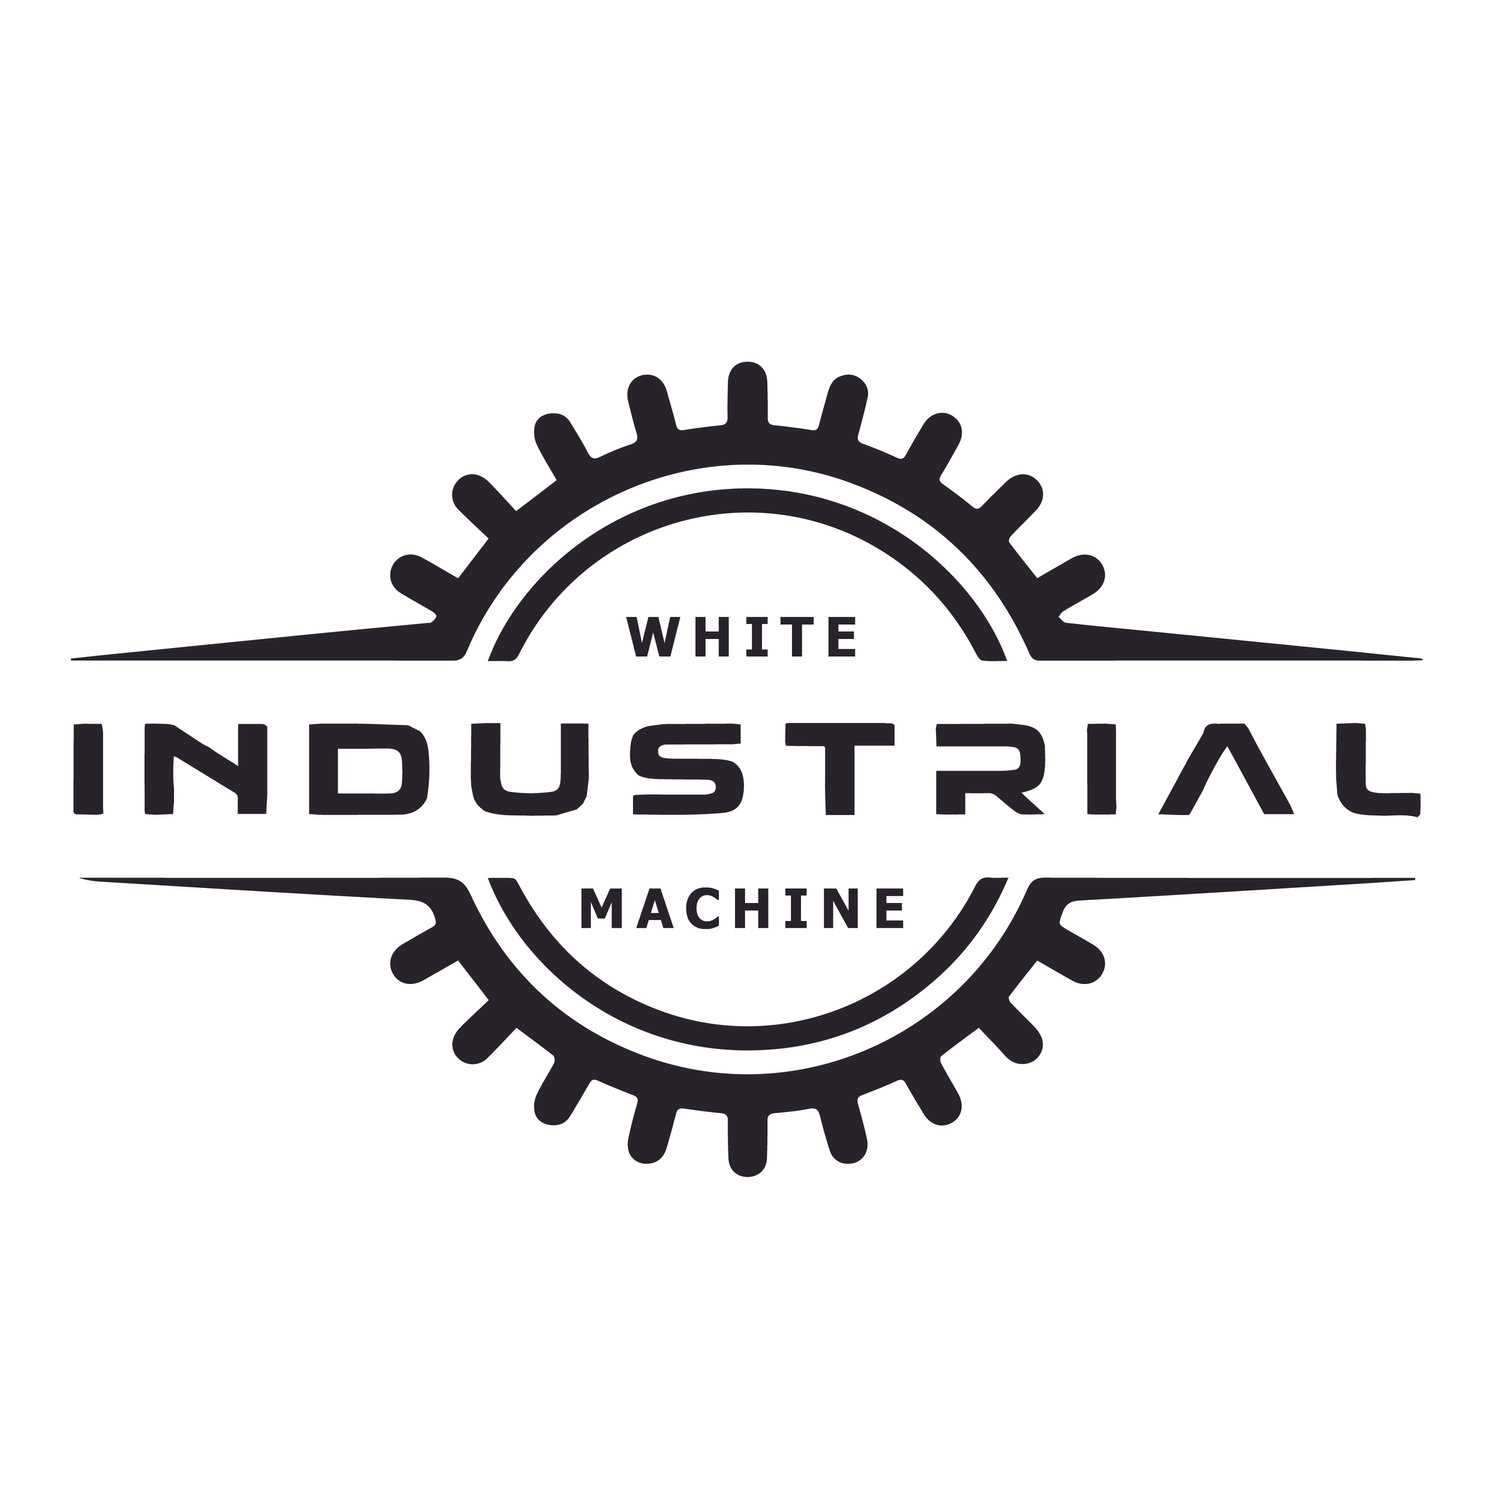 White Industrial Machine 